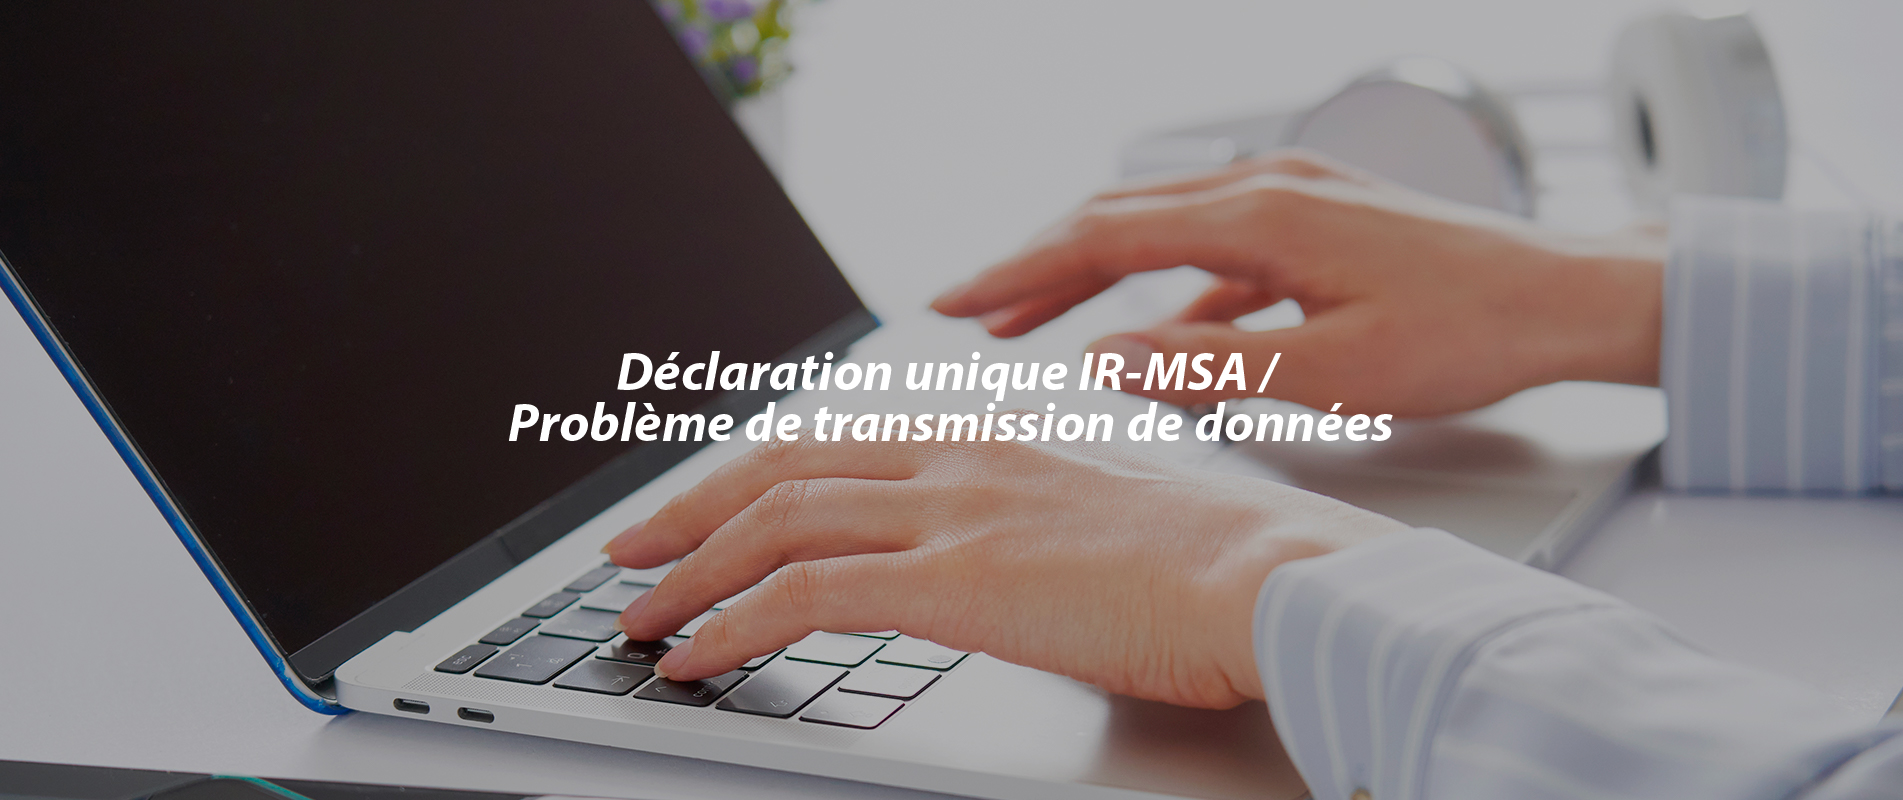 Déclaration unique IR-MSA / Problème de transmission de données